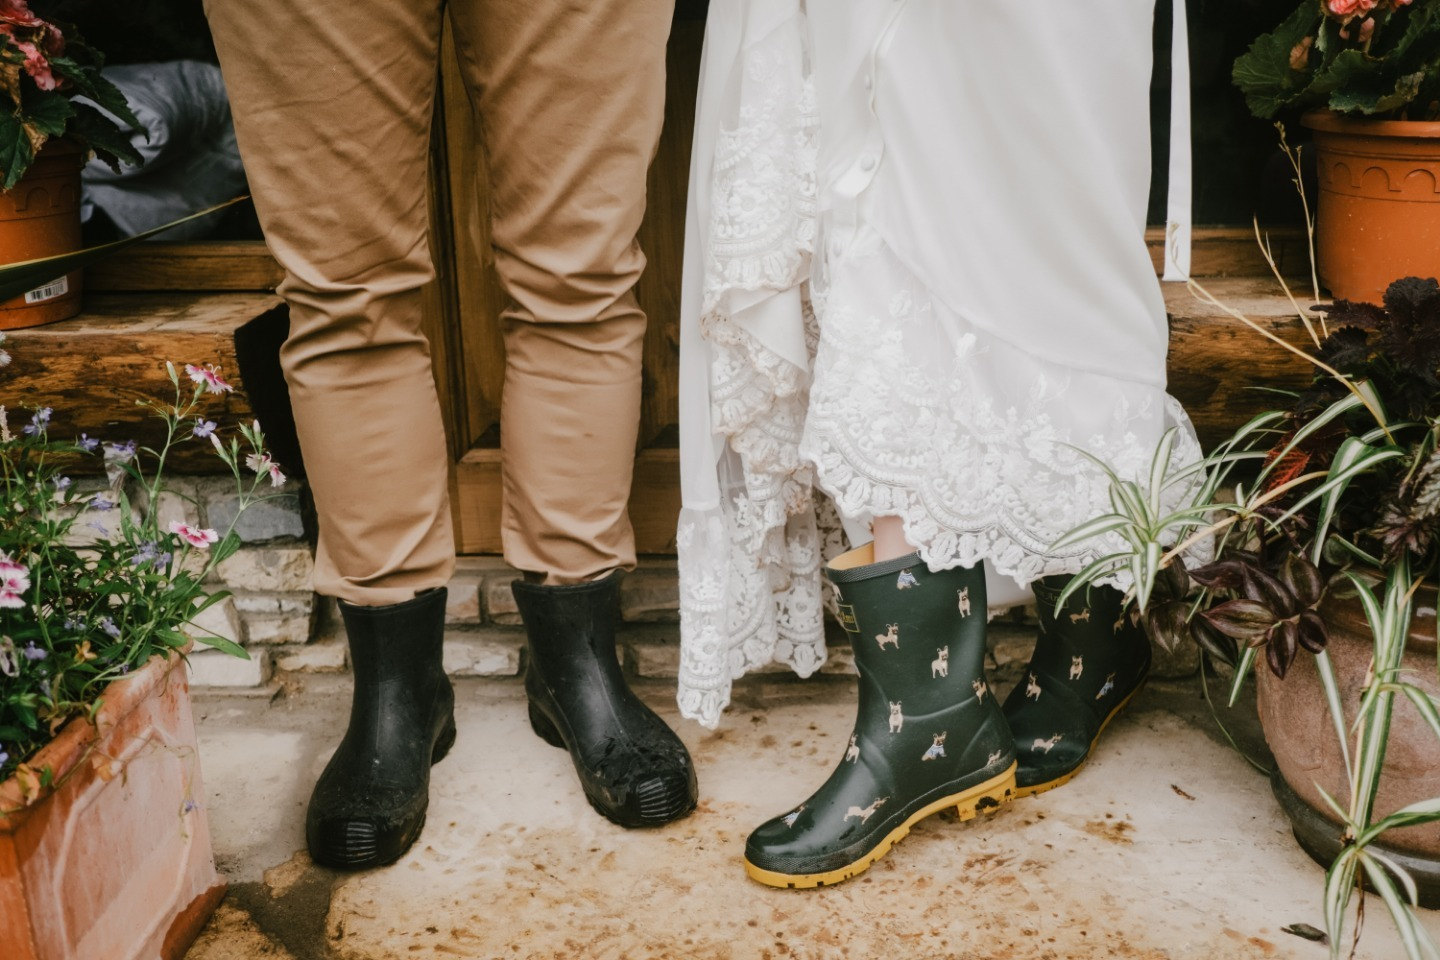 ФОТО ИЗ СТАТЬИ: Холодное лето: уютная свадьба в дождь